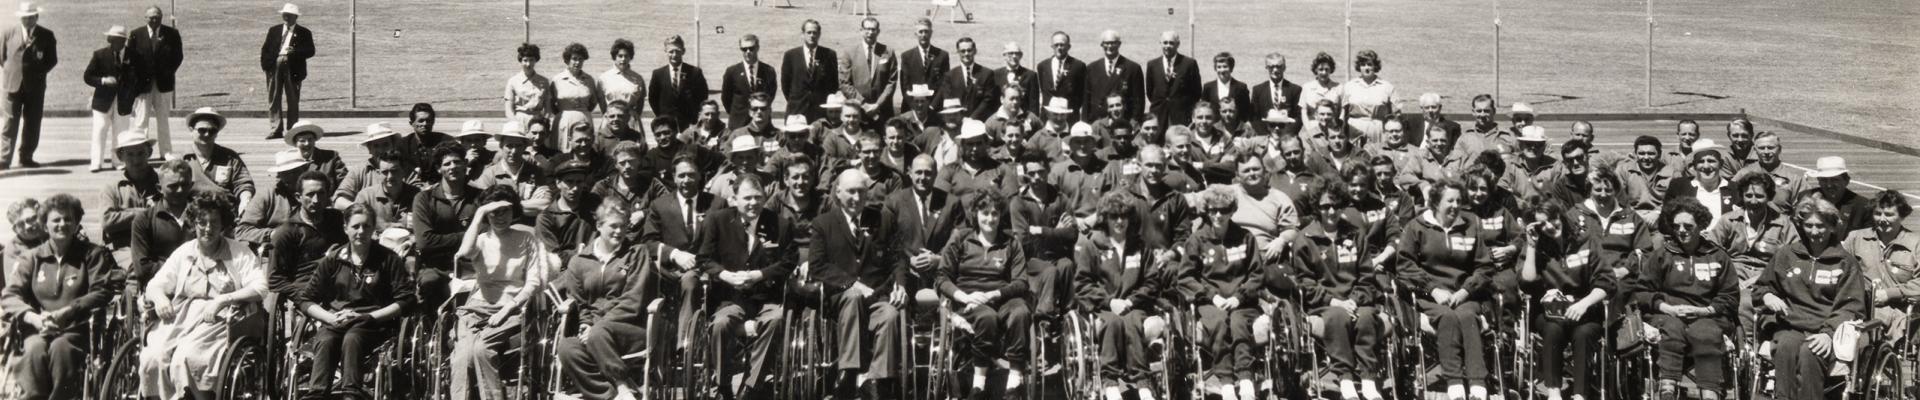 Perth Commonwealth Paraplegic Games competitors 1962